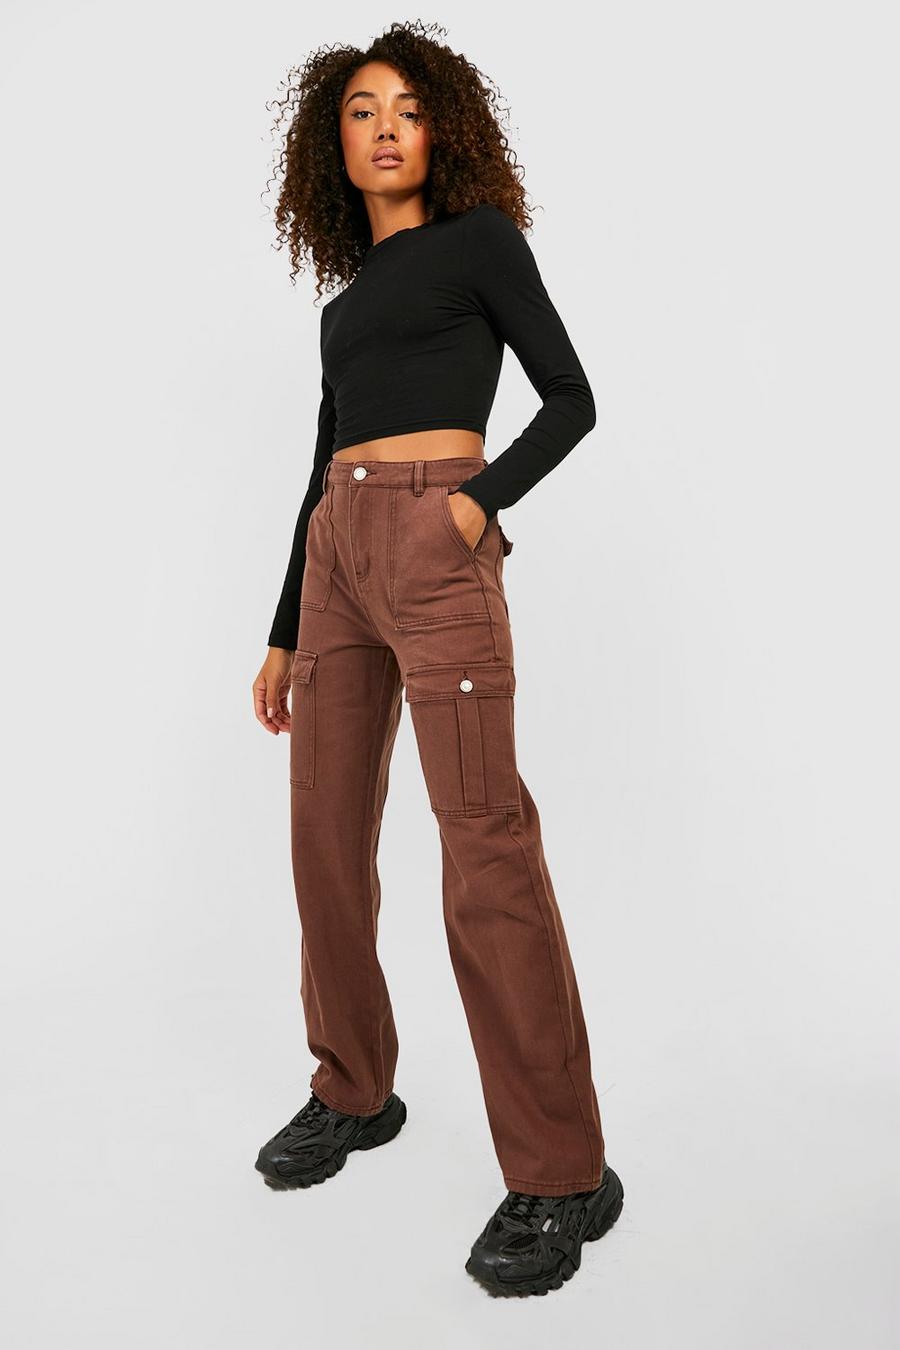 שוקולד marrone ג'ינס דגמ'ח בגזרת בויפרנד Mid Rise בצביעה כפולה, לנשים גבוהות